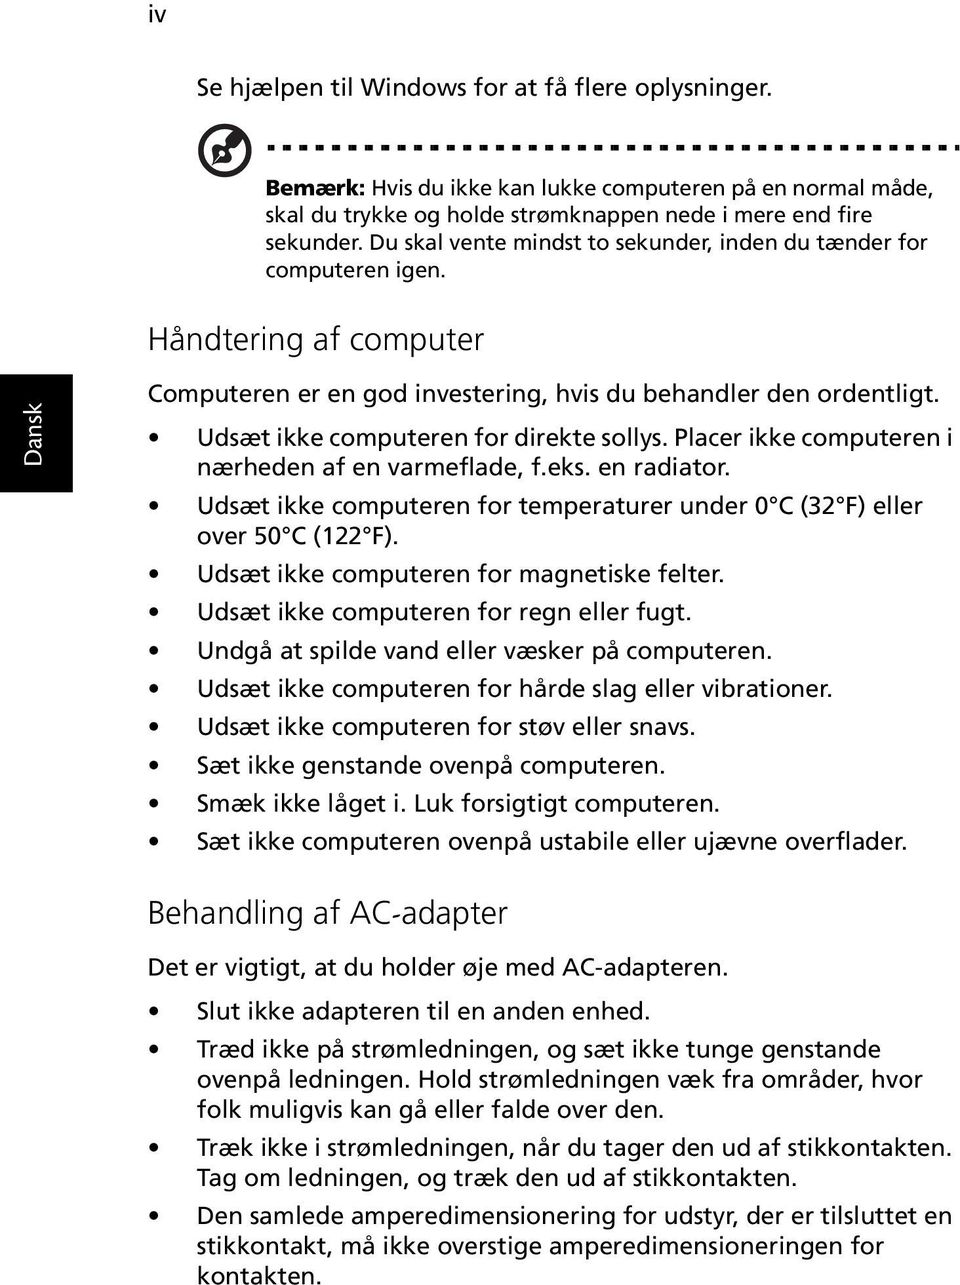 Udsæt ikke computeren for direkte sollys. Placer ikke computeren i nærheden af en varmeflade, f.eks. en radiator. Udsæt ikke computeren for temperaturer under 0 C (32 F) eller over 50 C (122 F).